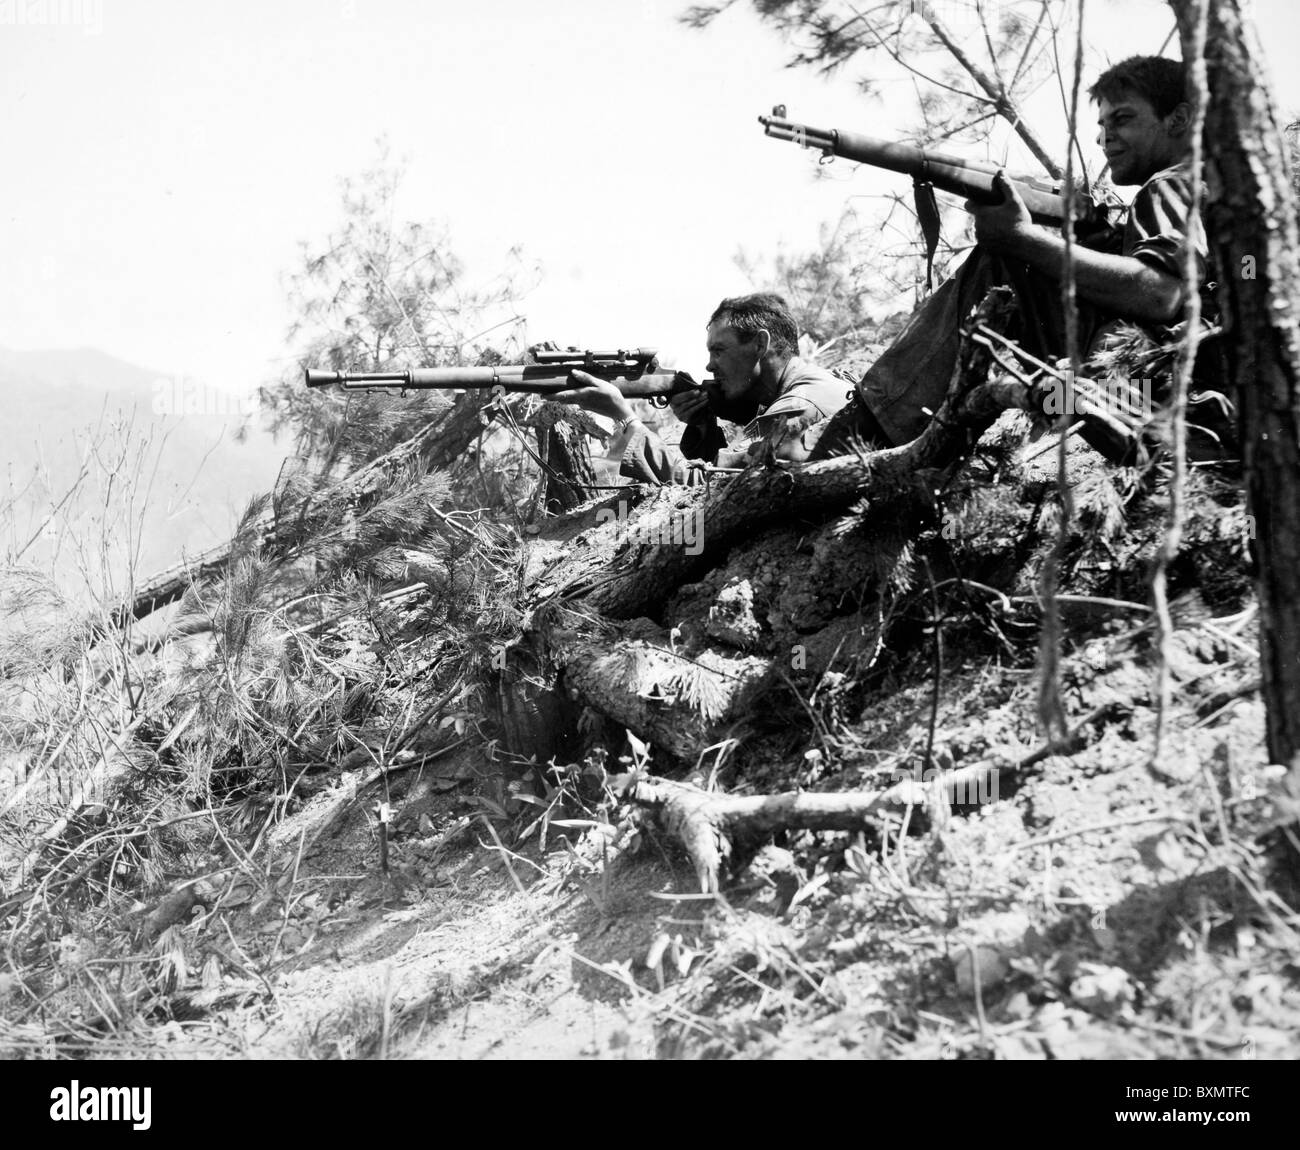 Jack SFC B Moore utilizza il suo fucile da cecchino mentre il suo associare copre lui a nord di inje, Corea. Entrambi gli uomini vengono da società D, 187th Foto Stock